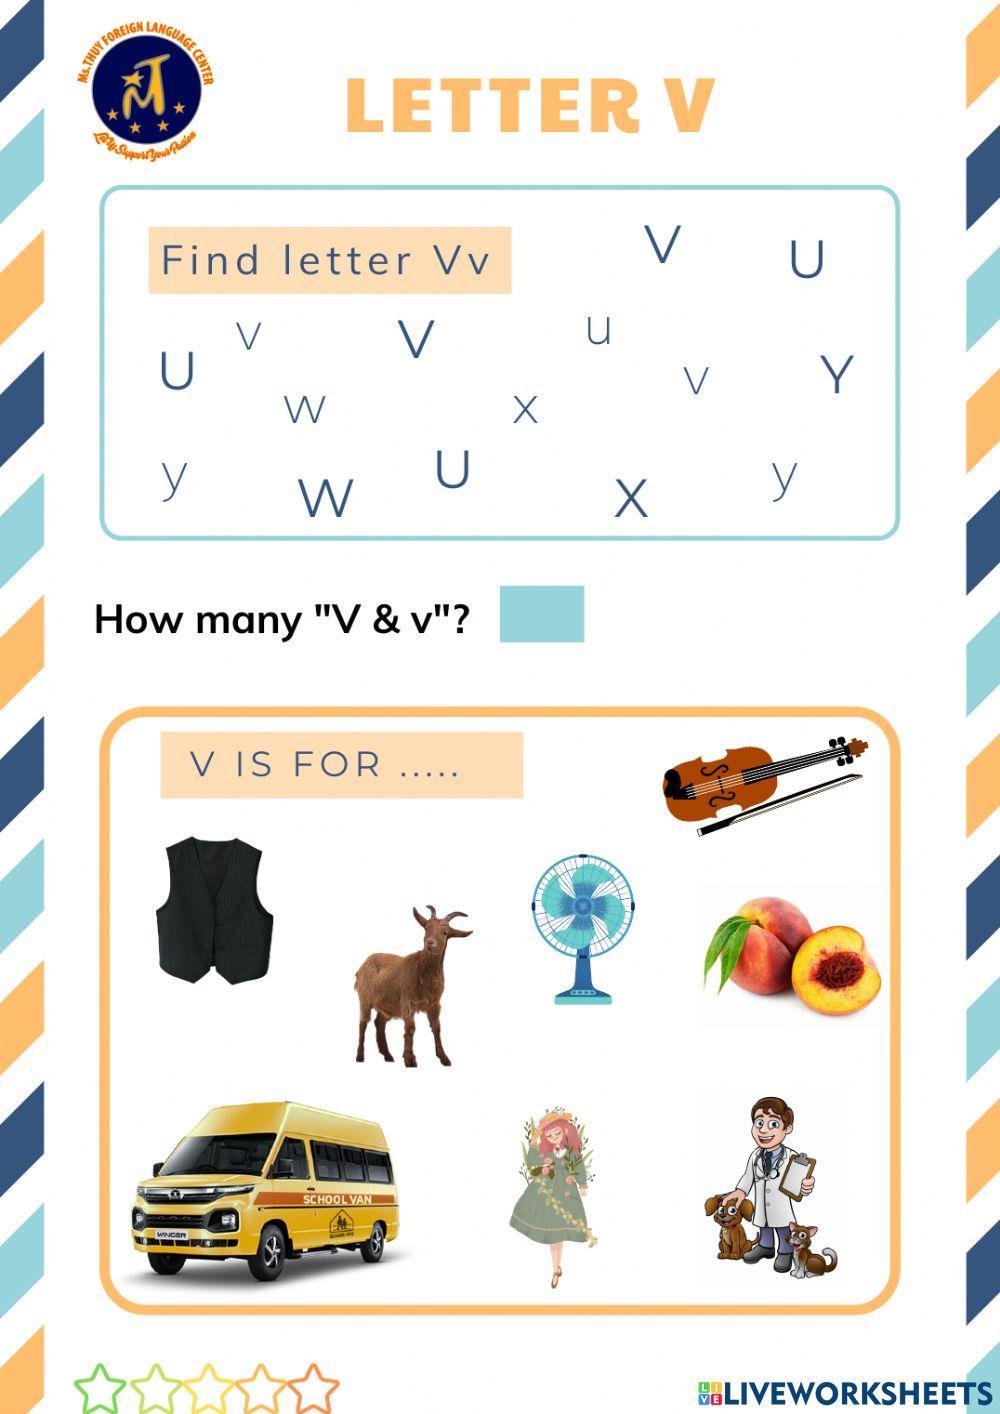 Find Letter Vv